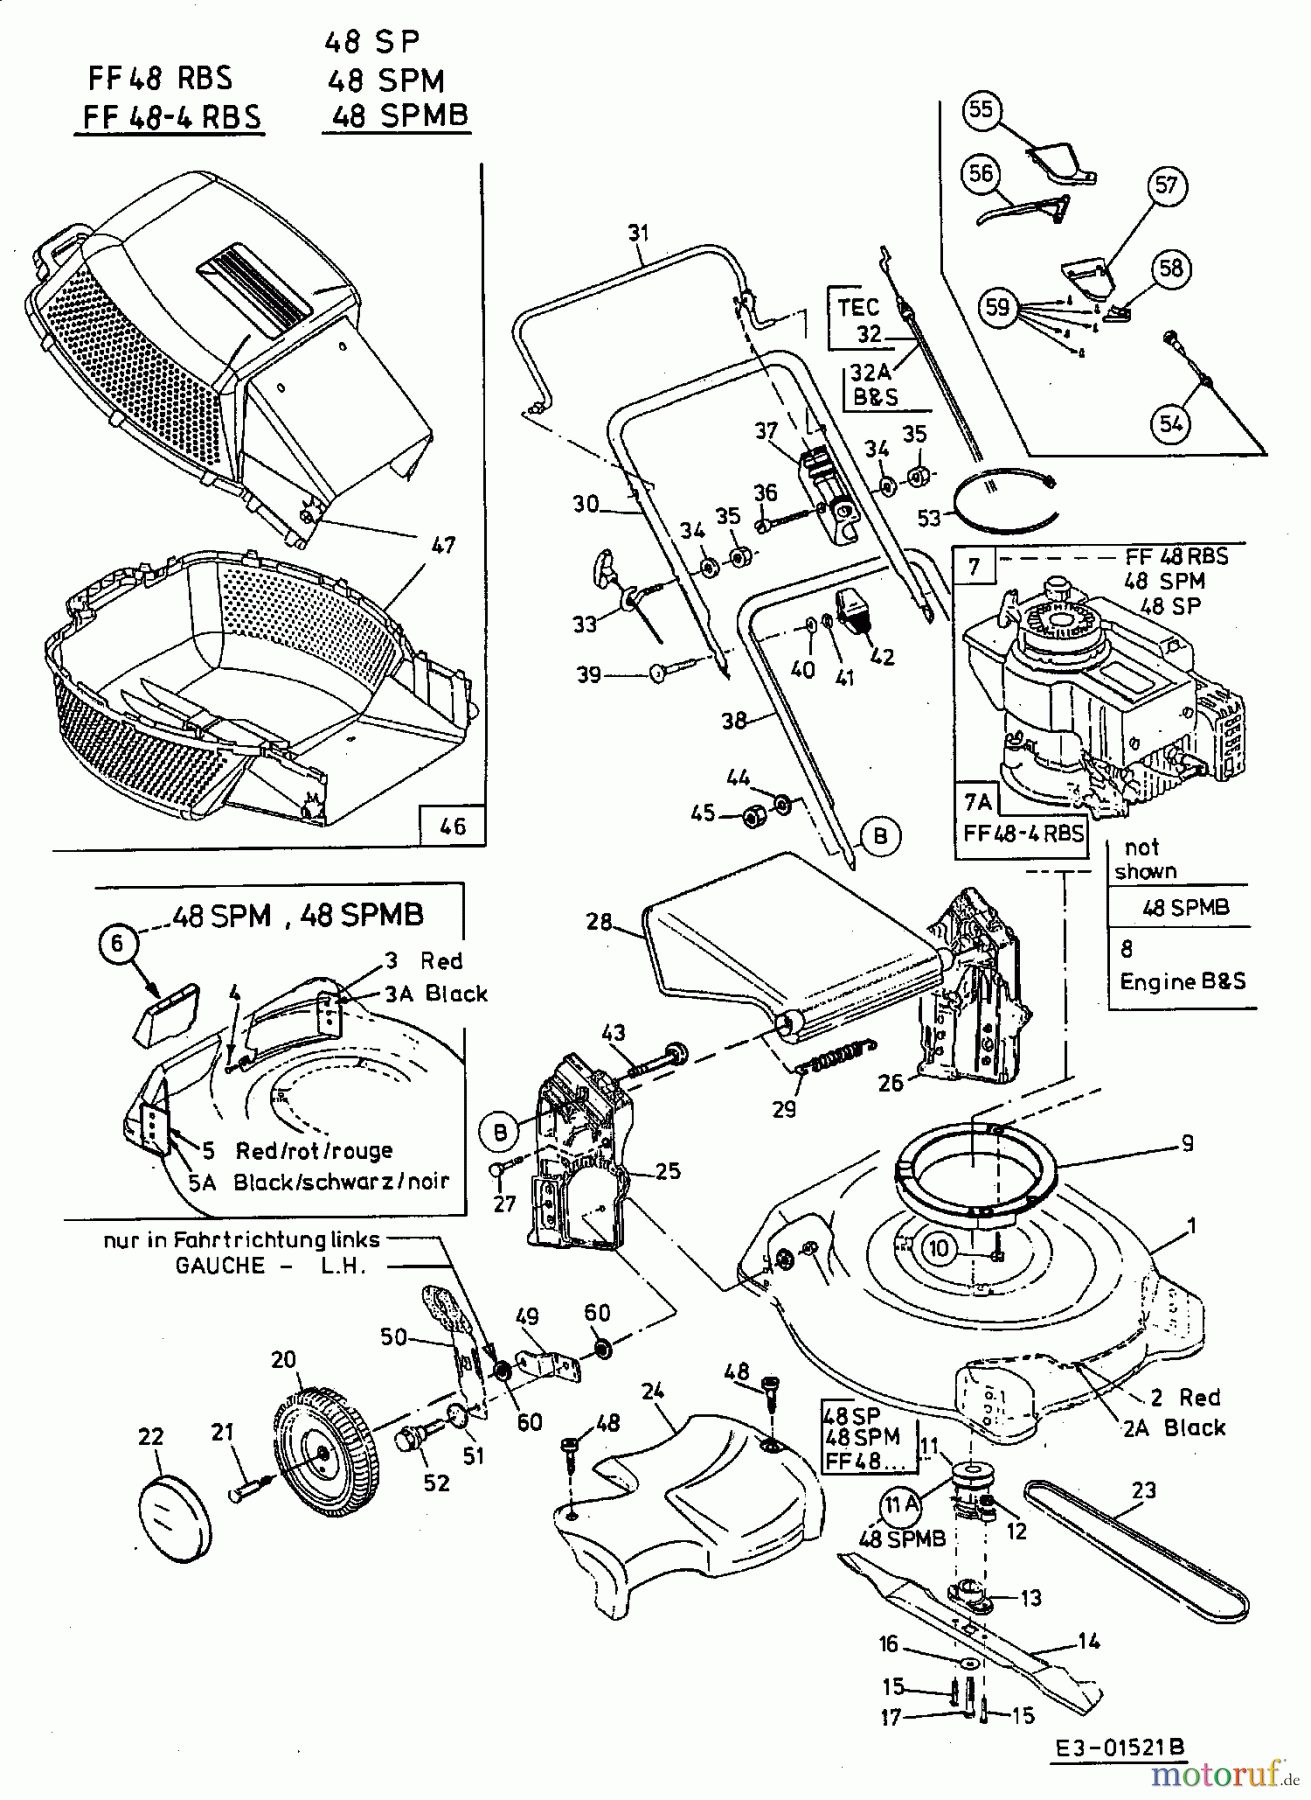  MTD Motormäher mit Antrieb FF 48 RBS 12A-V05V665  (2002) Grundgerät